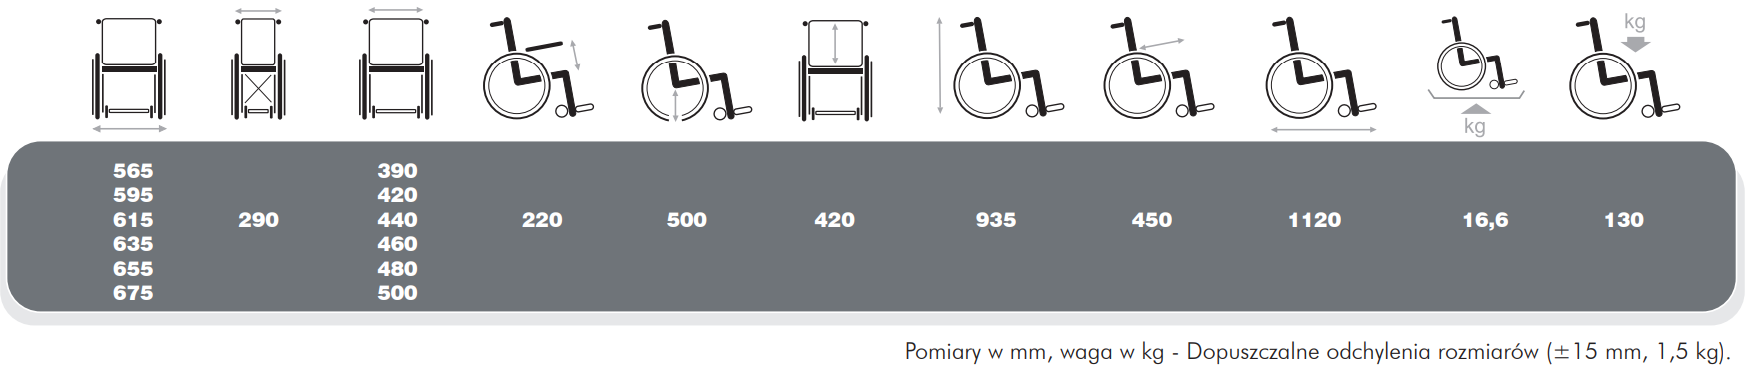 Wózek inwalidzki Jazz S50 - Wymiary